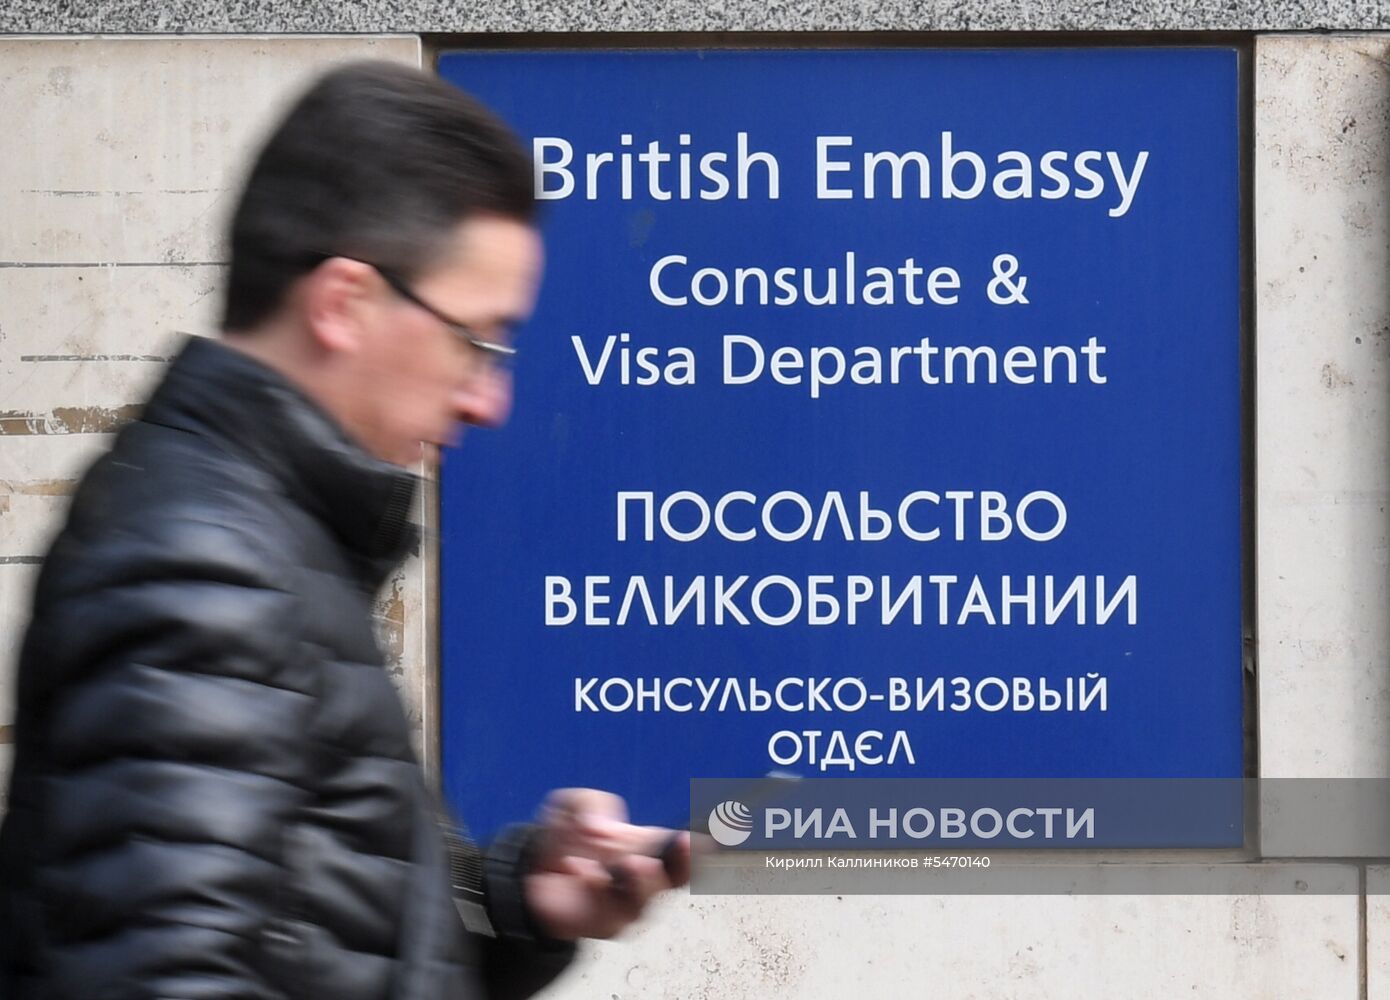 Виктория Скрипаль у Посольства Великобритании в Москве